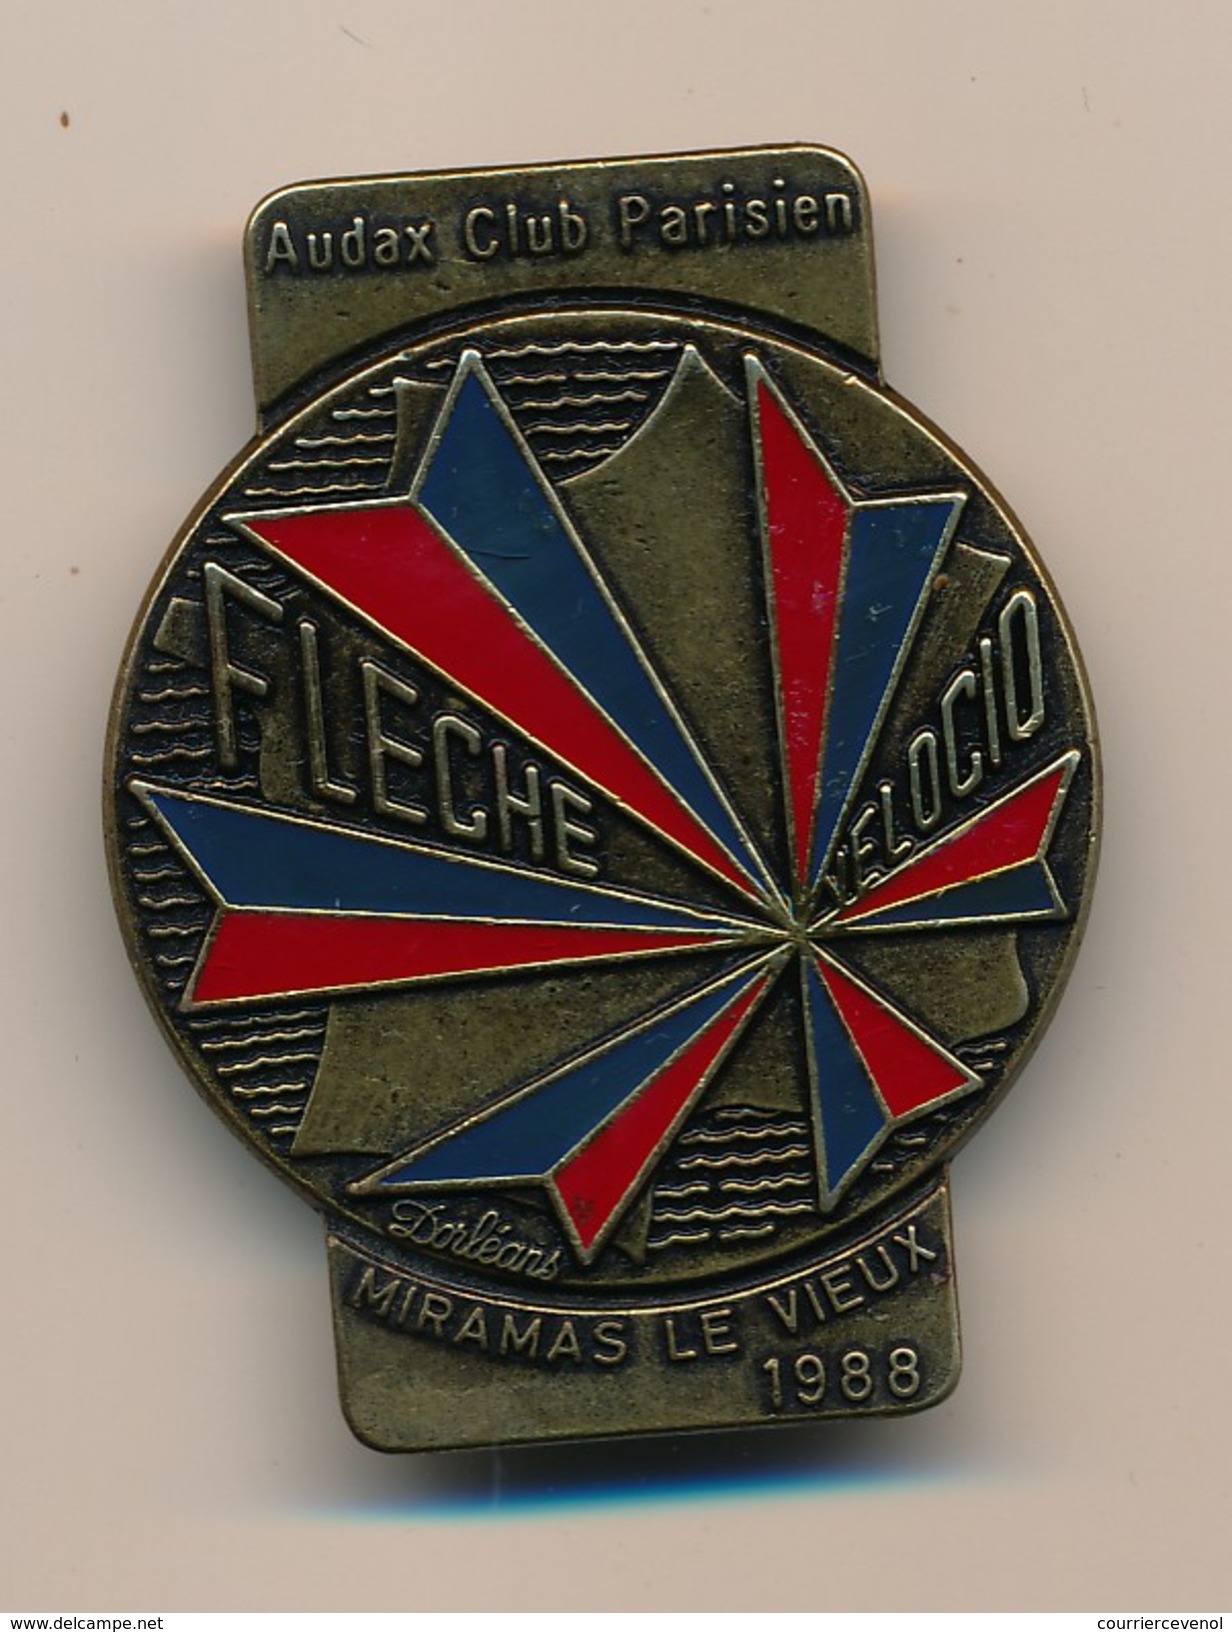 Badge (fixation épingle) - AUDAX CLUB PARISIEN - Flèche Velocio - MIRAMAS LE VIEUX 1988 - Ciclismo